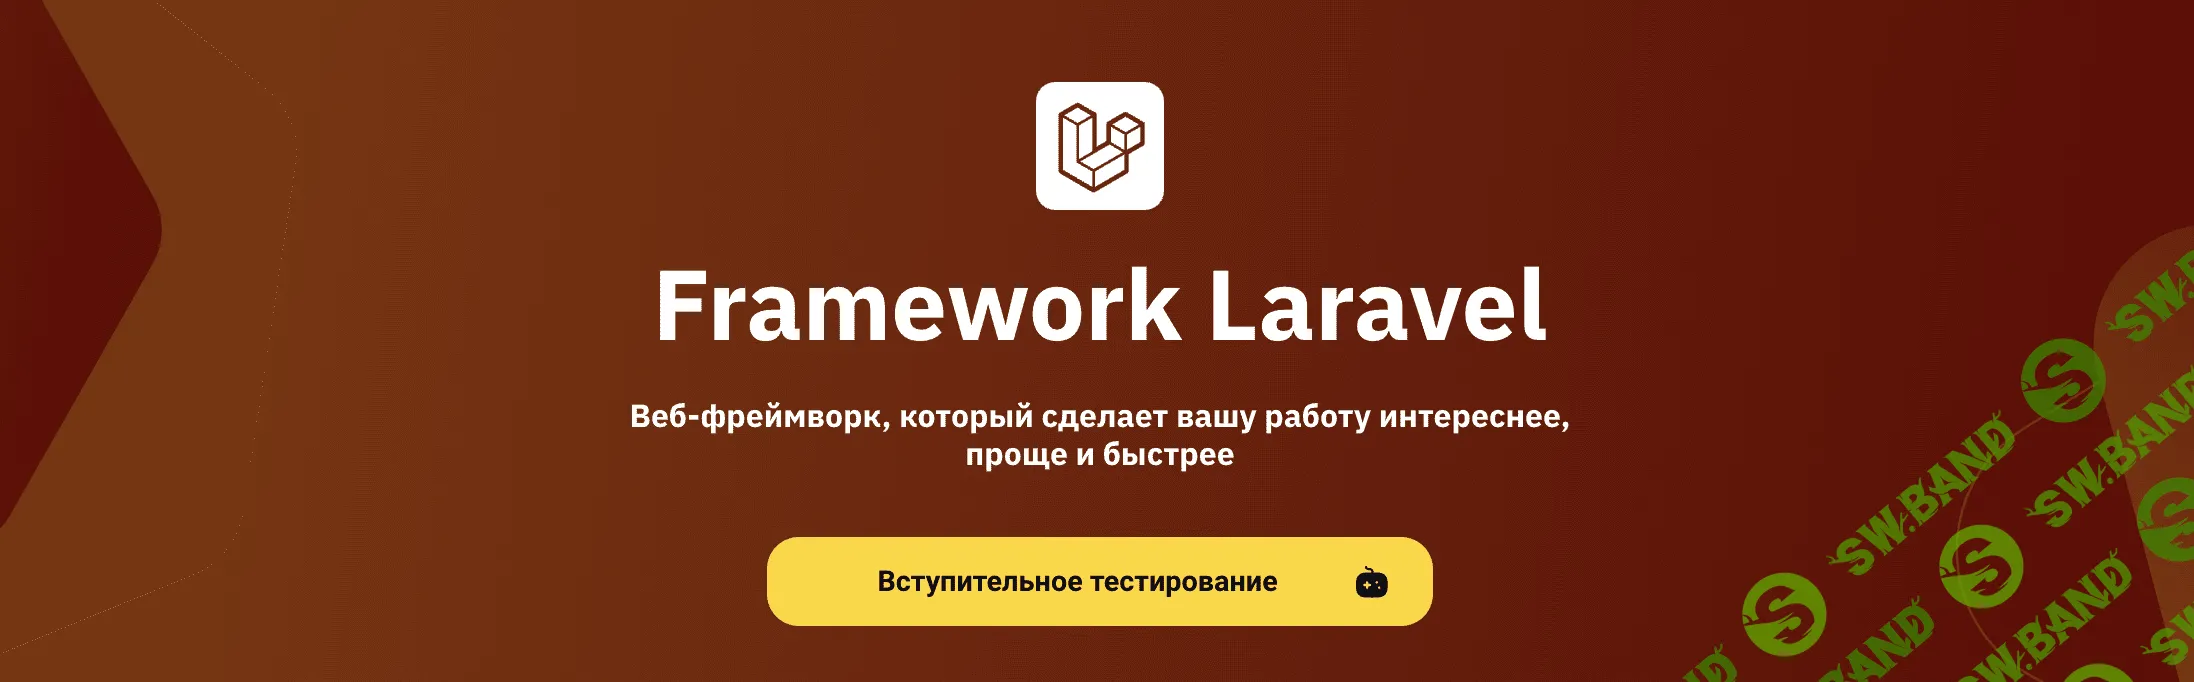 [OTUS] Framework Laravel